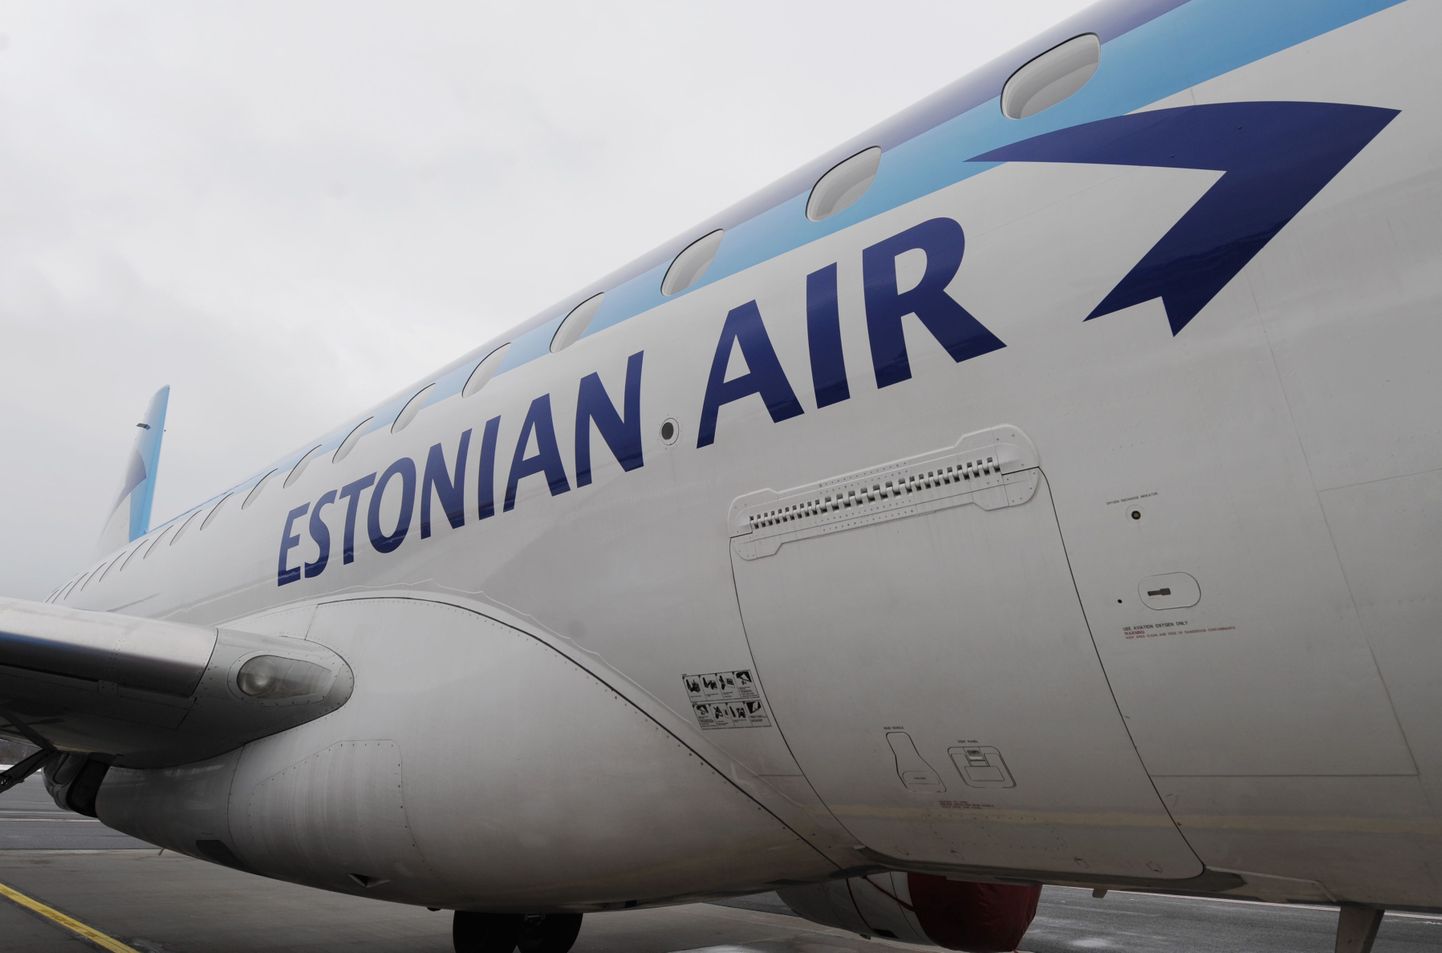 Estonian Airi lennuk.